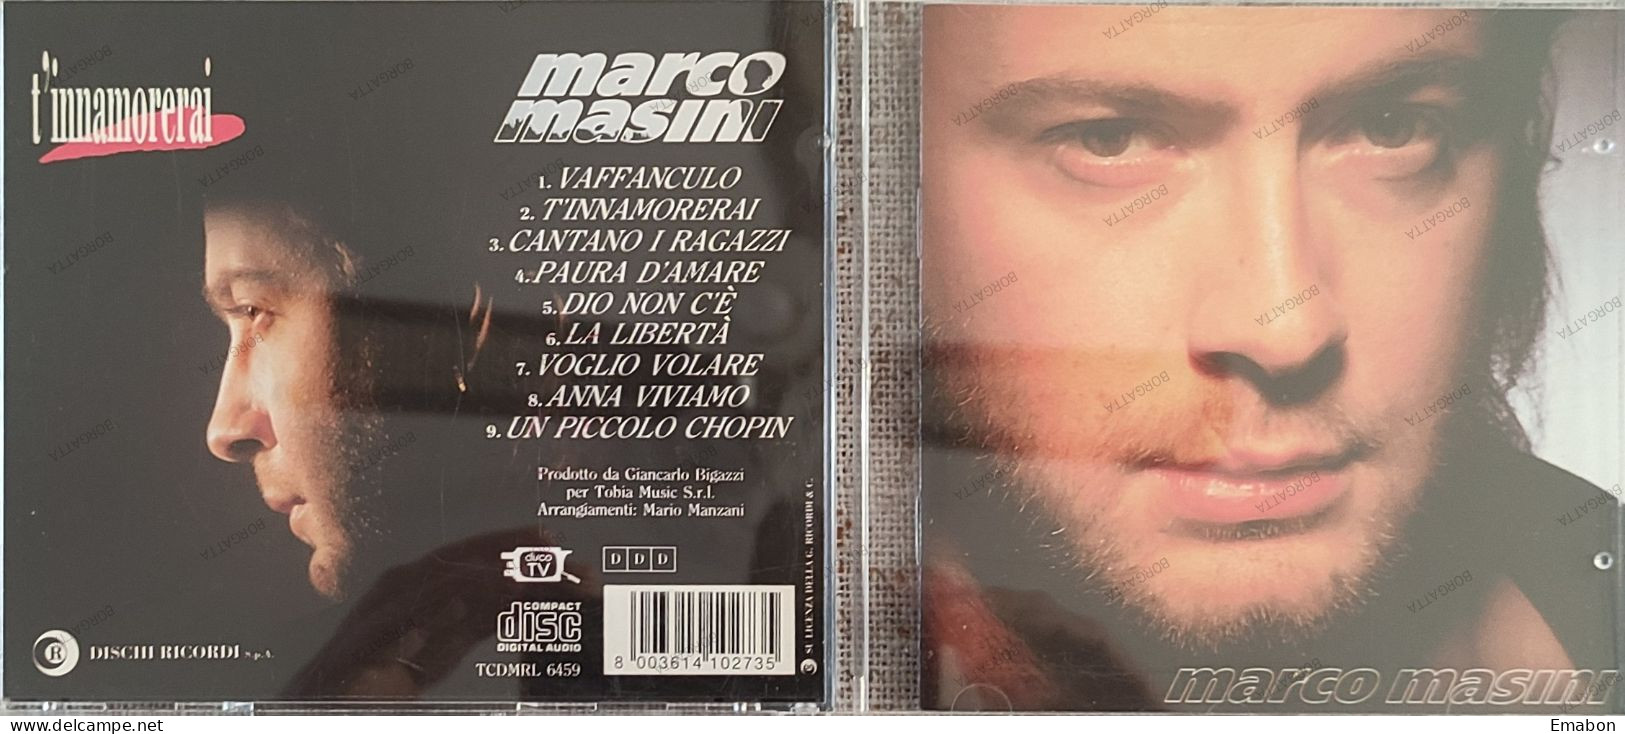 BORGATTA - ITALIANA  - Cd MARCO MASINI - T' INNAMORERAI  - DISCHI RICORDI 1993 -  USATO In Buono Stato - Autres - Musique Italienne